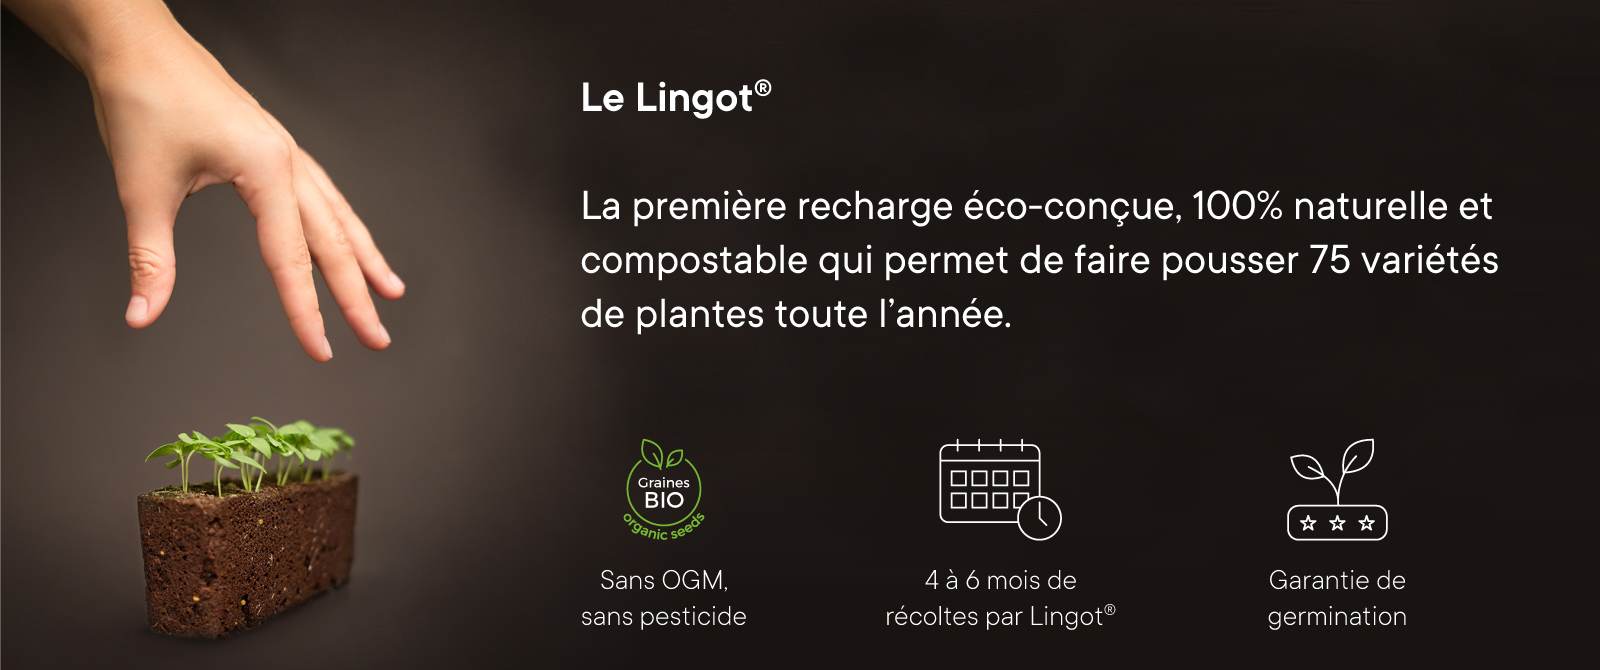 Bannière Lingot